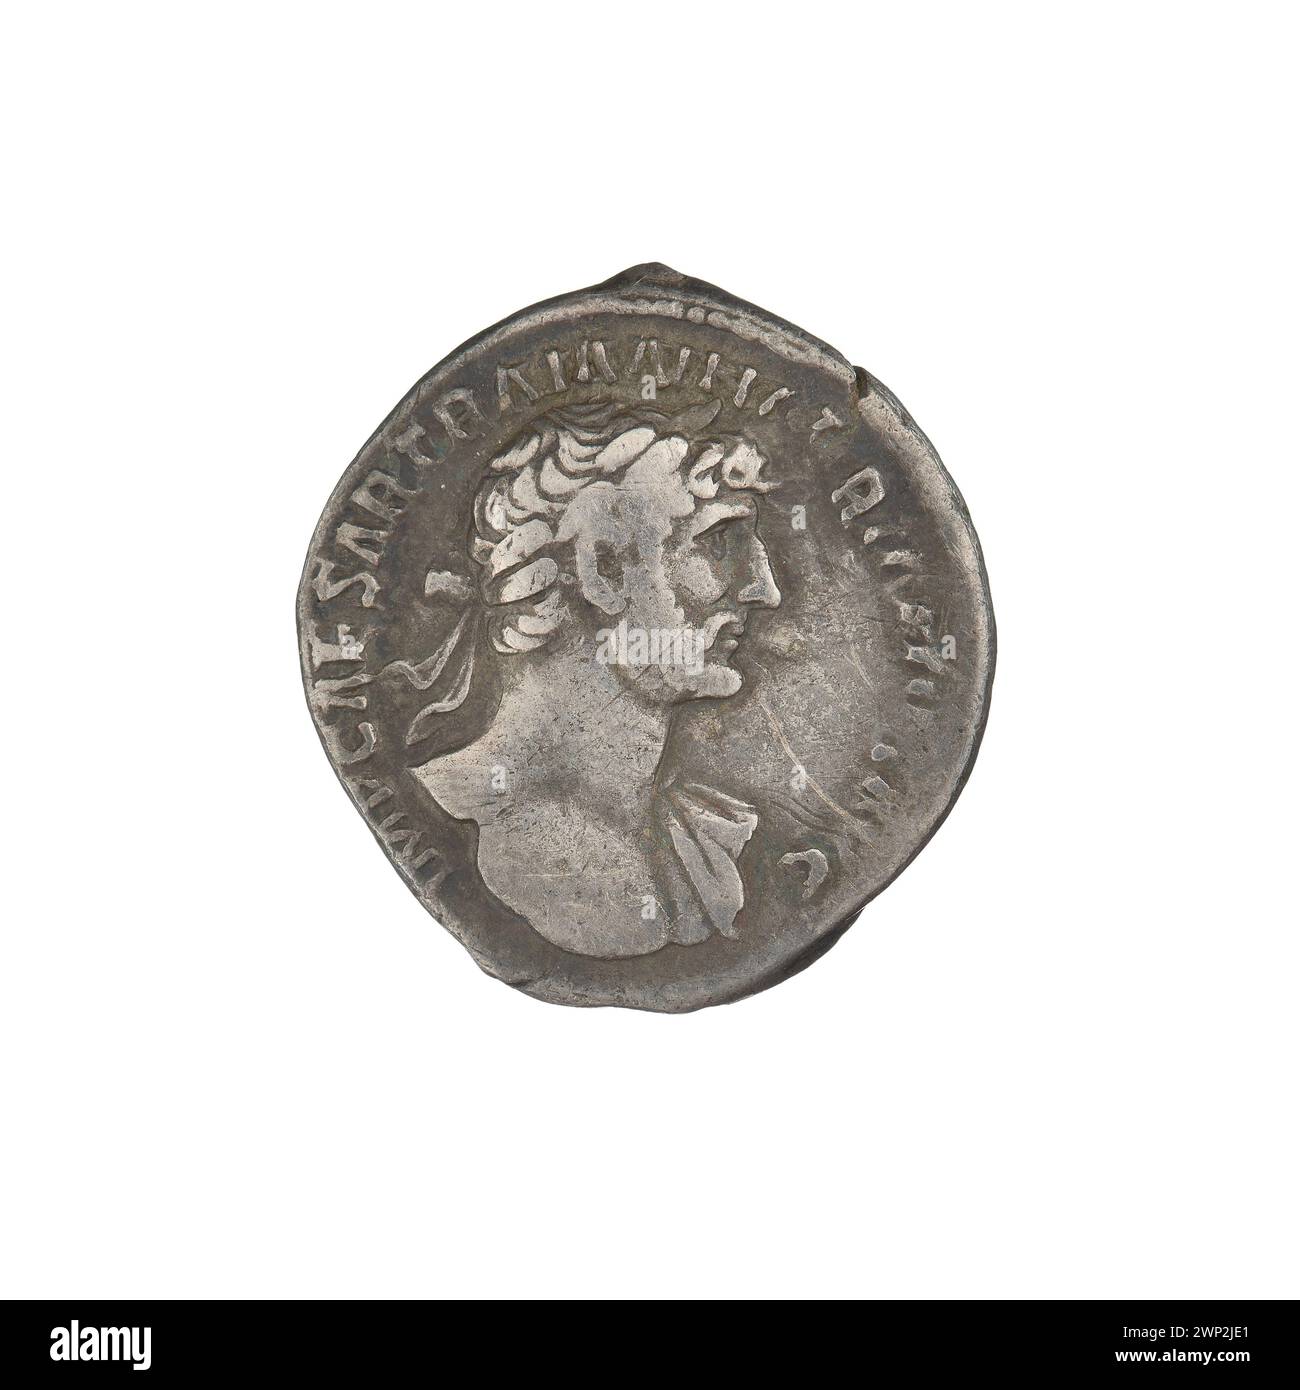 denarius; Hadrian (76-138; Roman emperor 117-138); 118 (118-00-00-118-00-00);Salus (Personification), Patery, Busters, Bay Wreaths Stock Photo